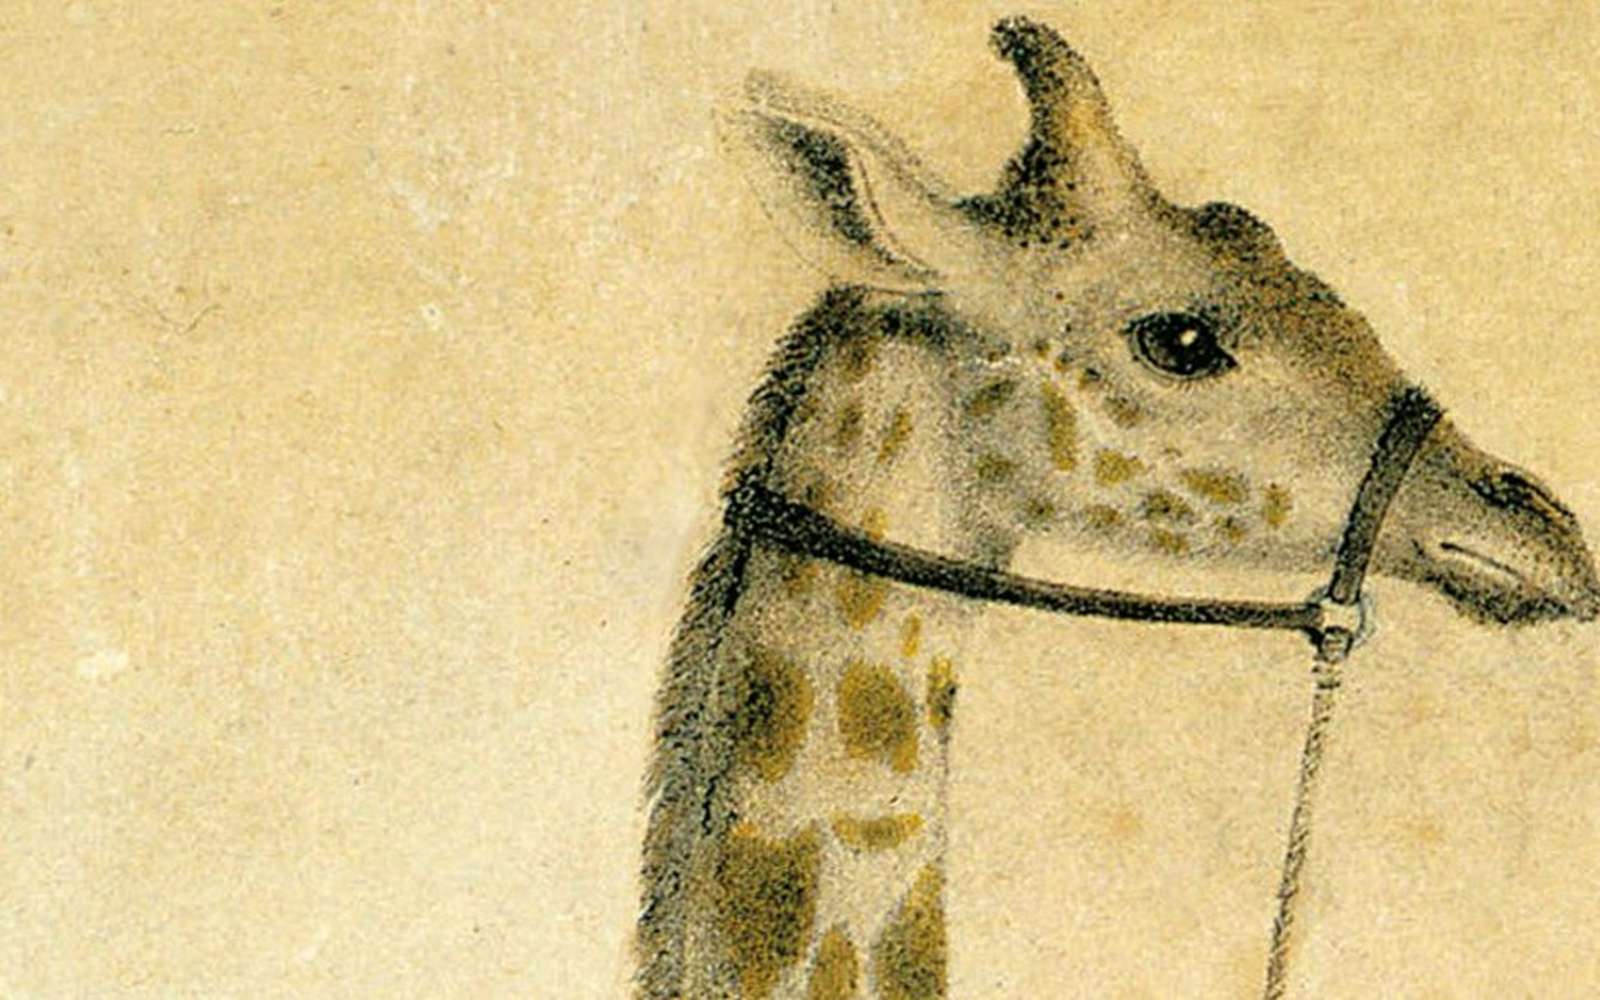 Chasseurs de science, épisode 6 : Zarafa, une girafe à Paris